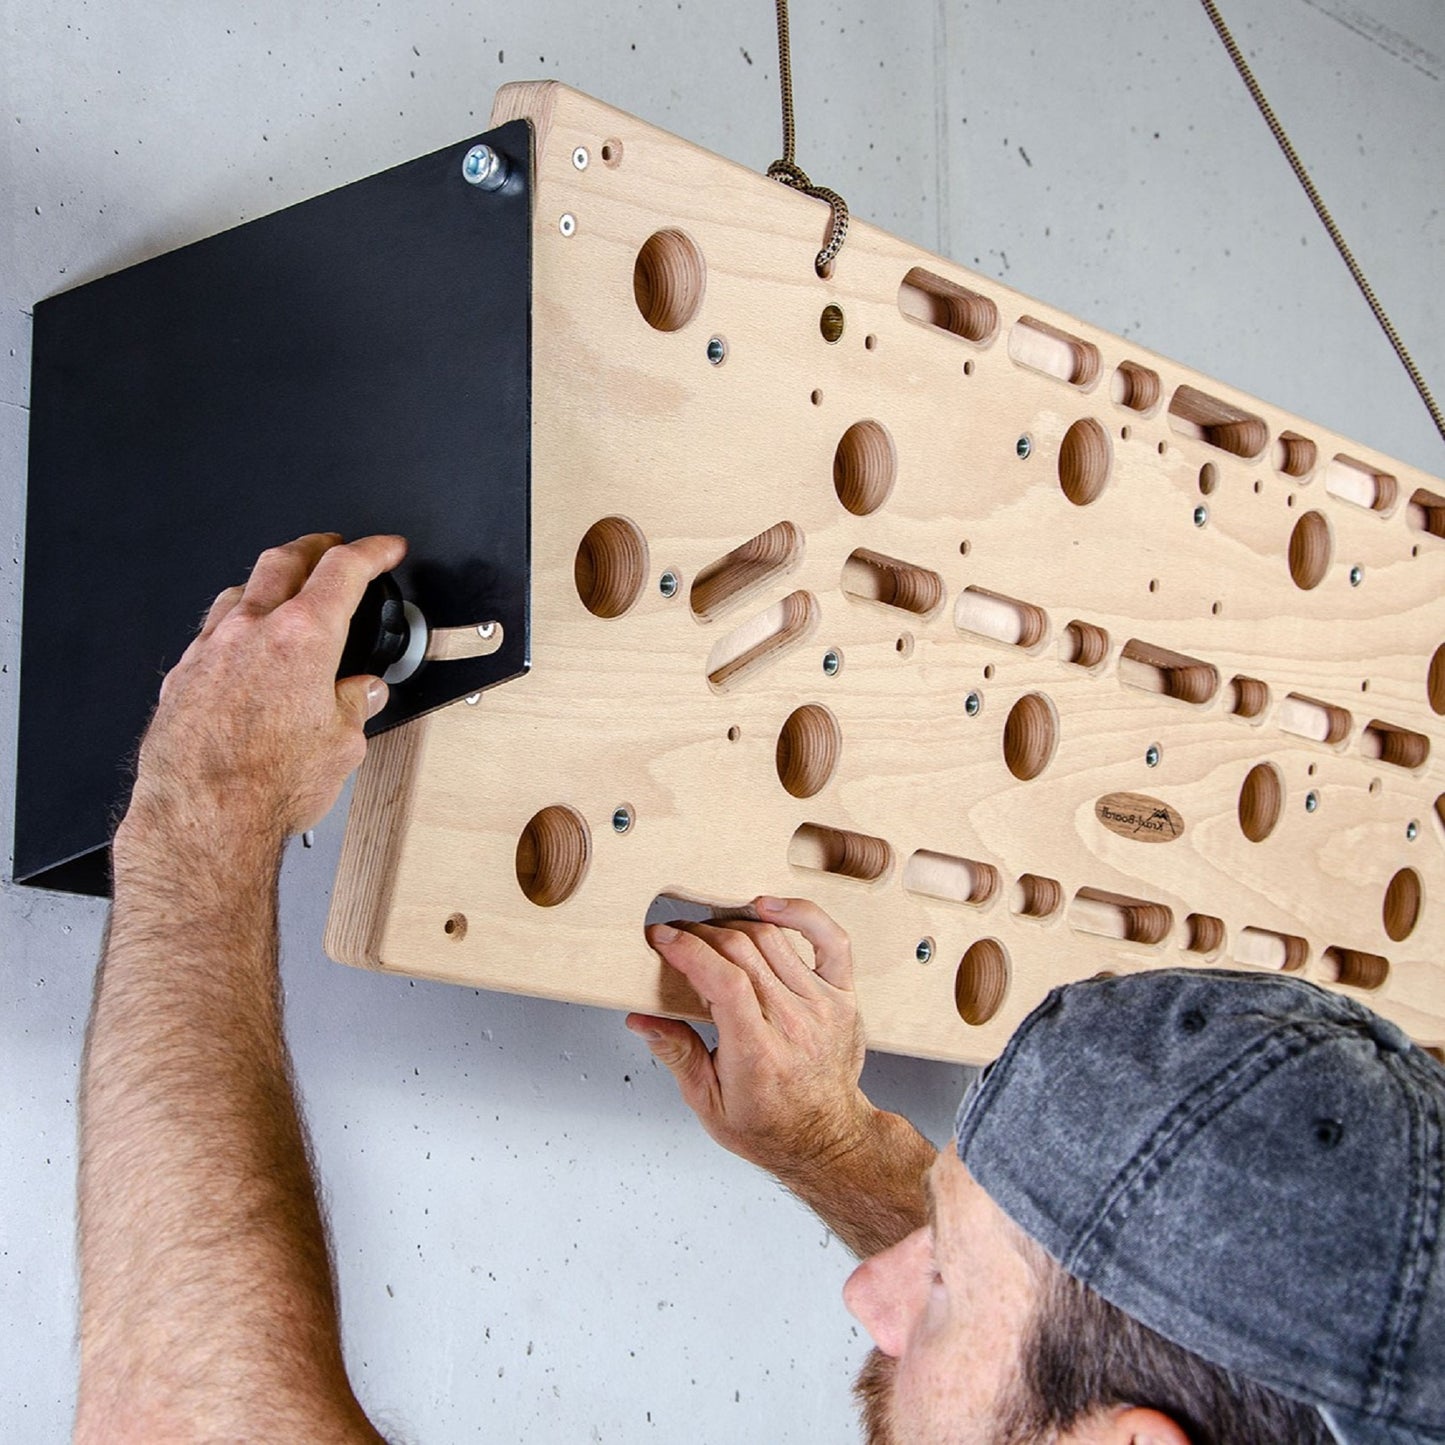 Kraxlboard The Wall B-Stock:la pared de entrenamiento multifuncional para la patada definitiva